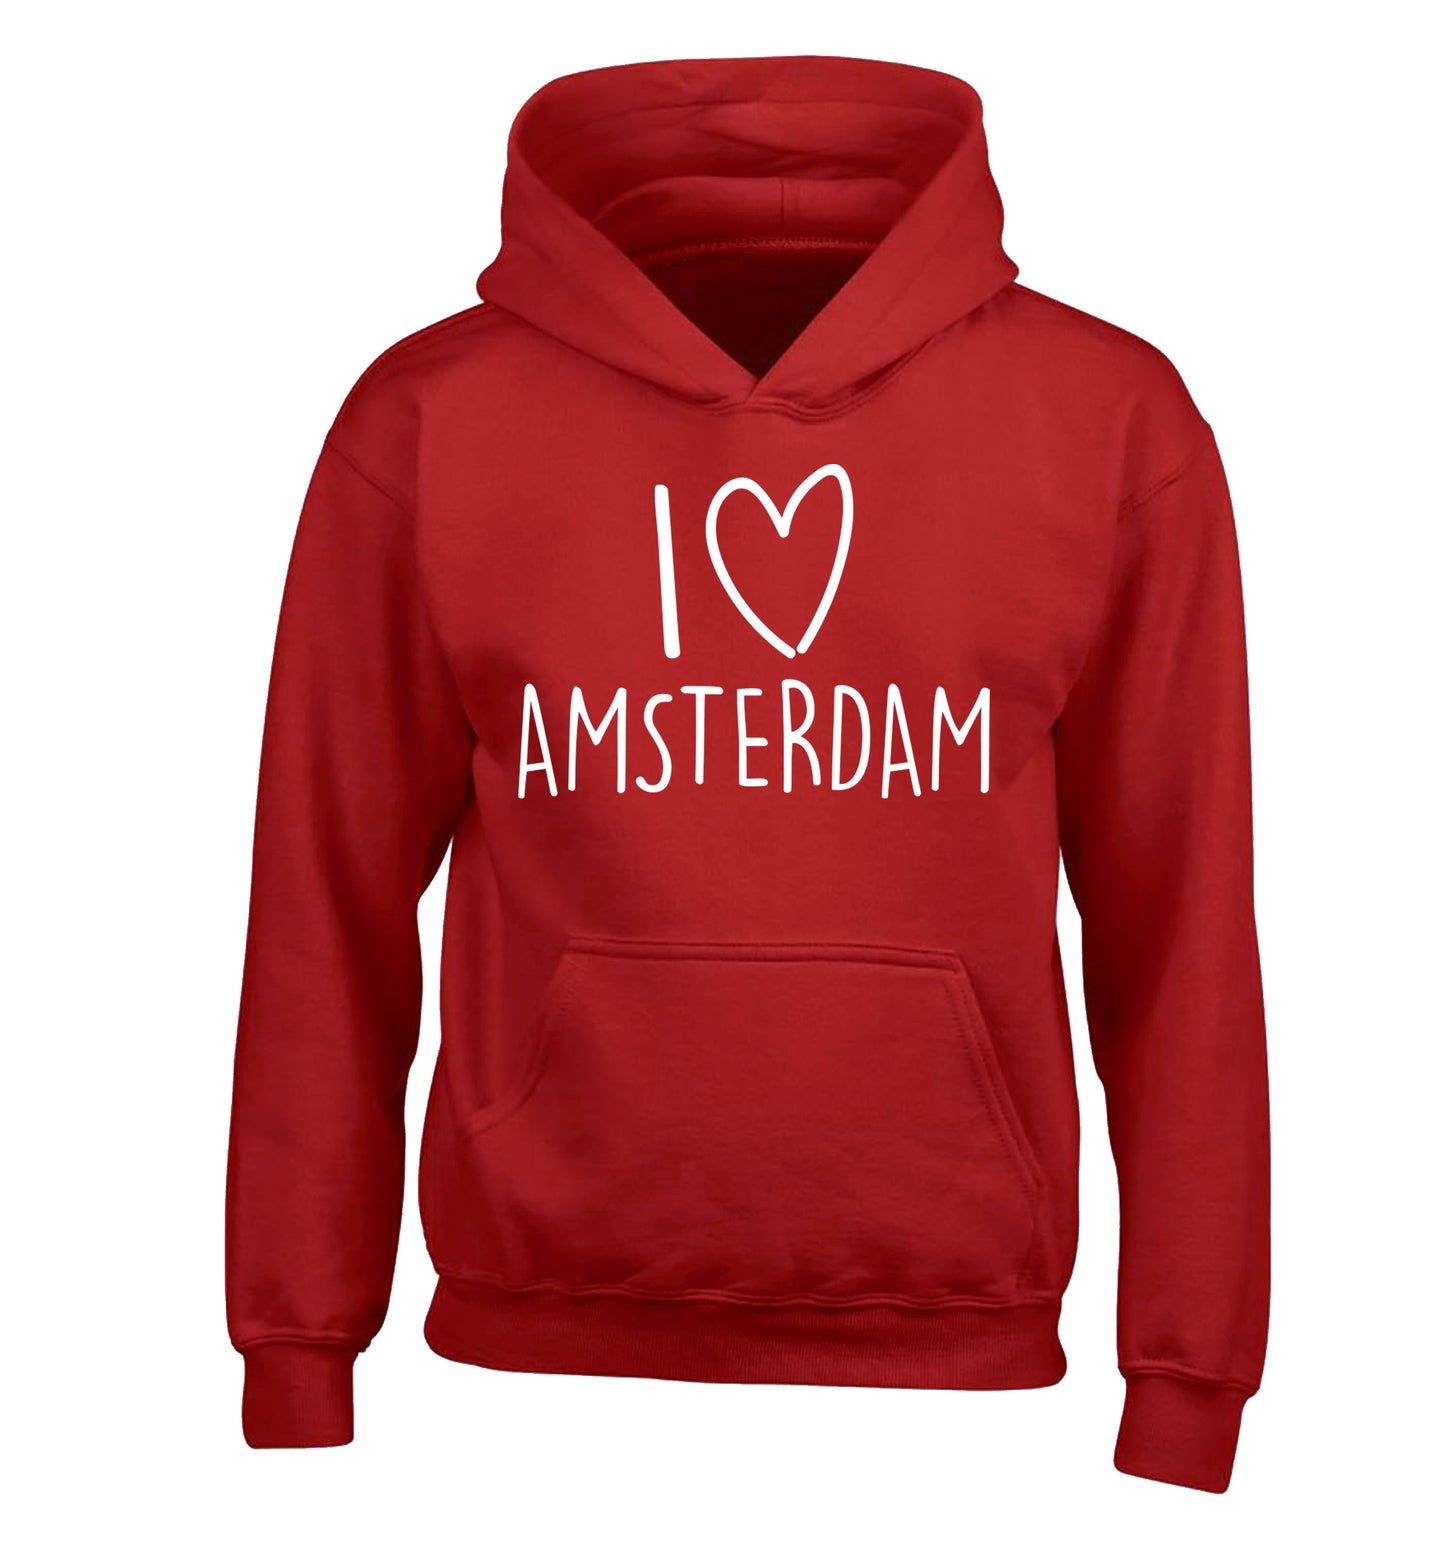 I love Amsterdam children's red hoodie 12-13 Years